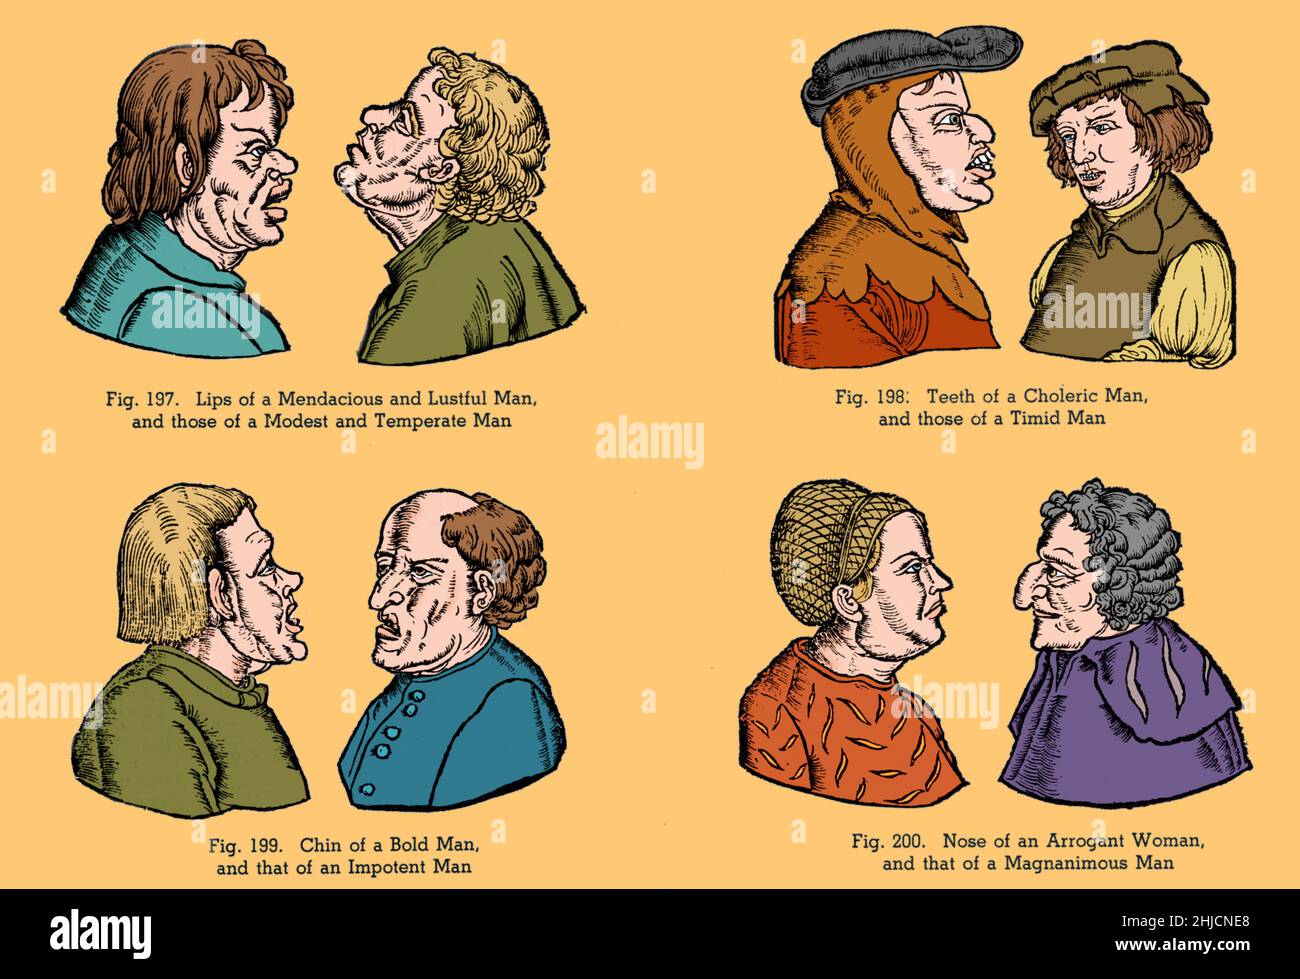 Illustrazioni di stereotipi medievali di personalità basate su caratteristiche facciali. La pseudoscienza della fisiognomia è la valutazione del carattere o della personalità di una persona dal suo aspetto esterno, specialmente il volto. Colore ottimizzato. Foto Stock